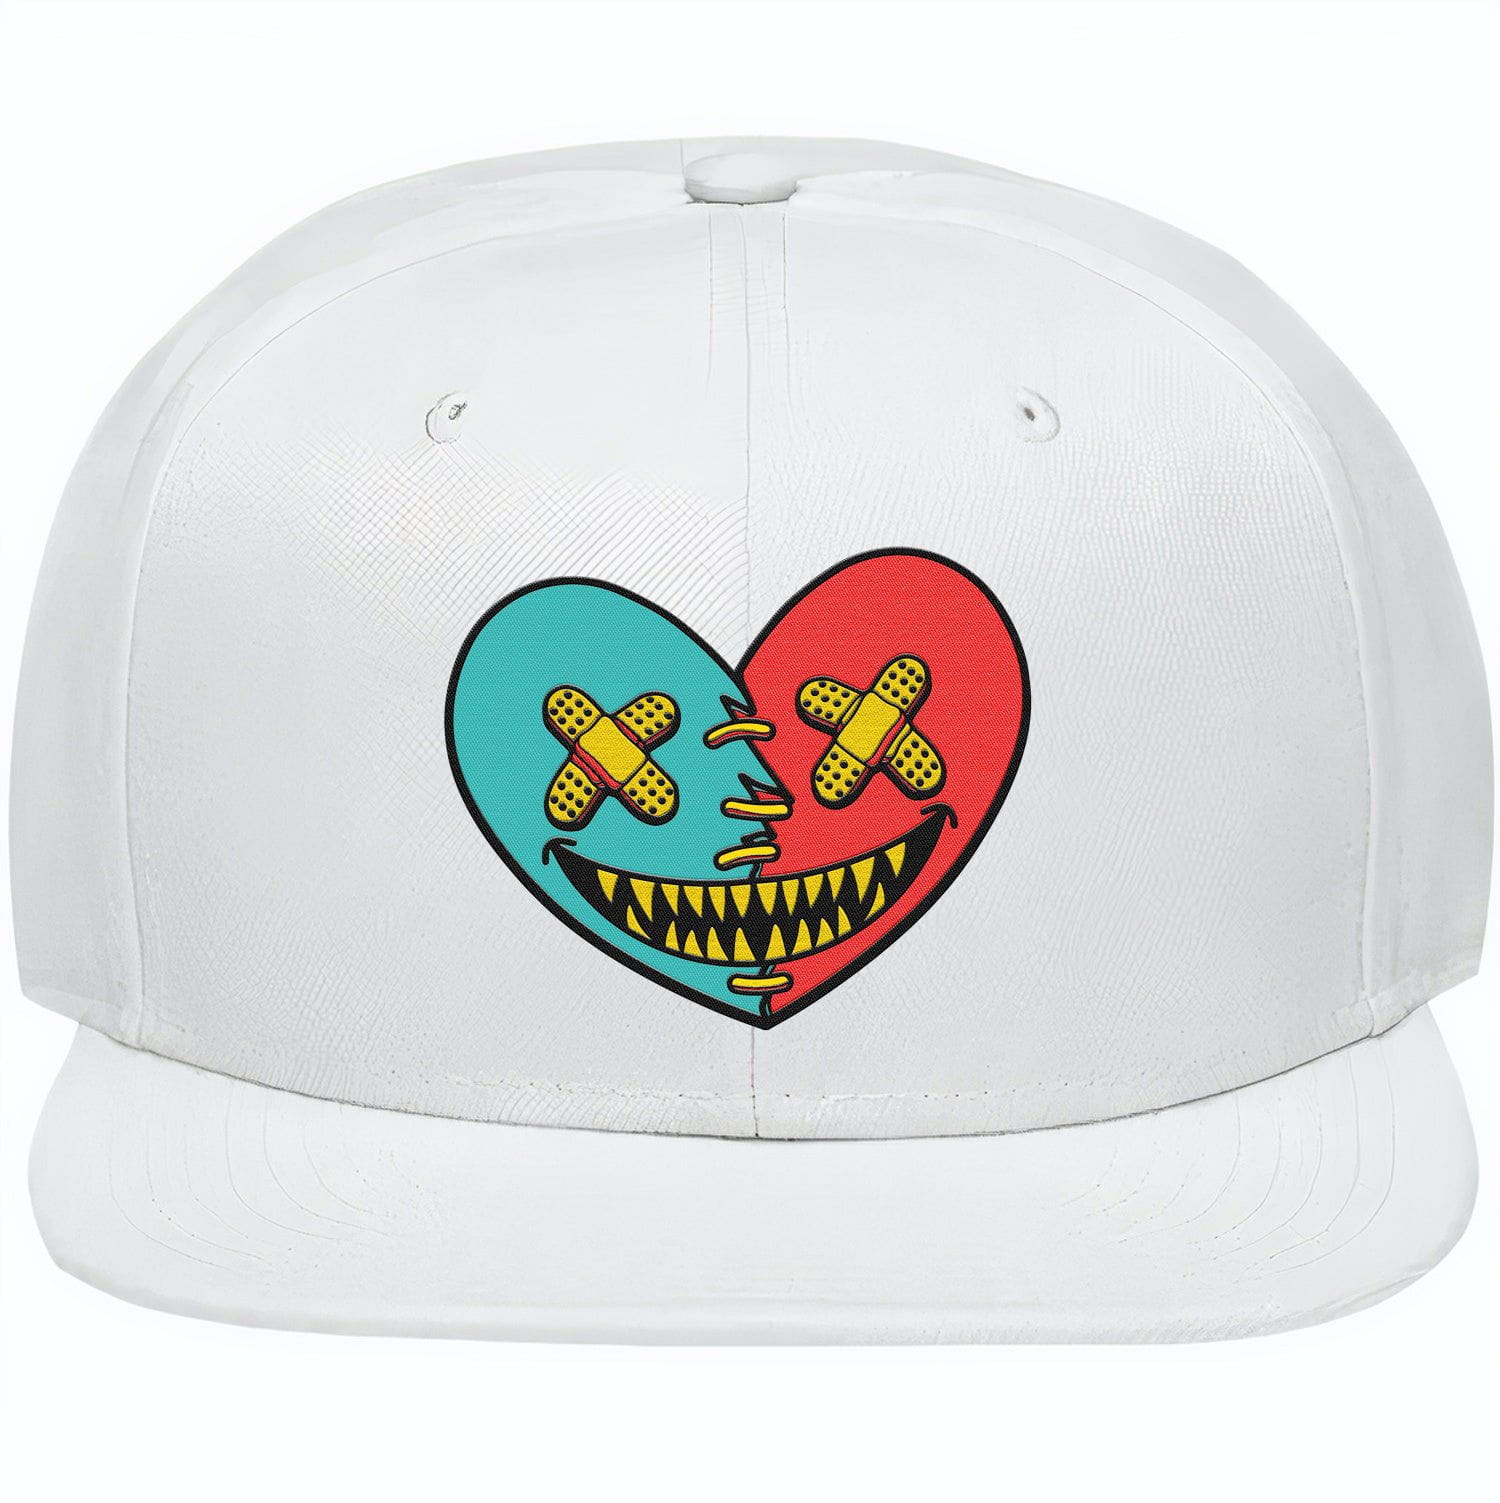 Kobe 8 Venice Beach 8s Snapback Hats - Venice Heart Baws